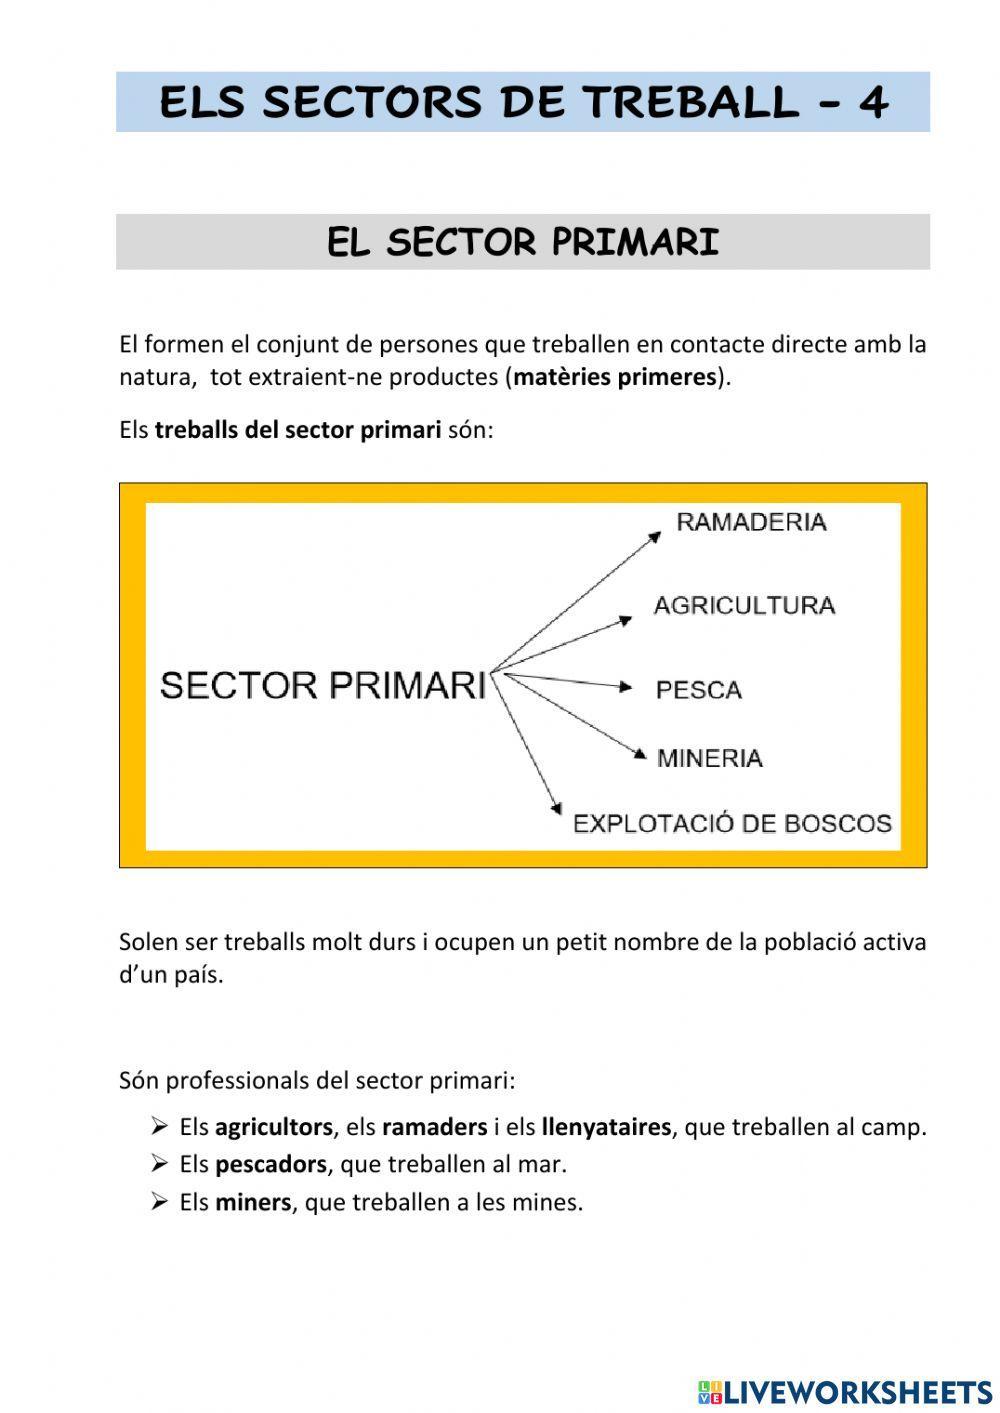 Els sectors de treball - 4